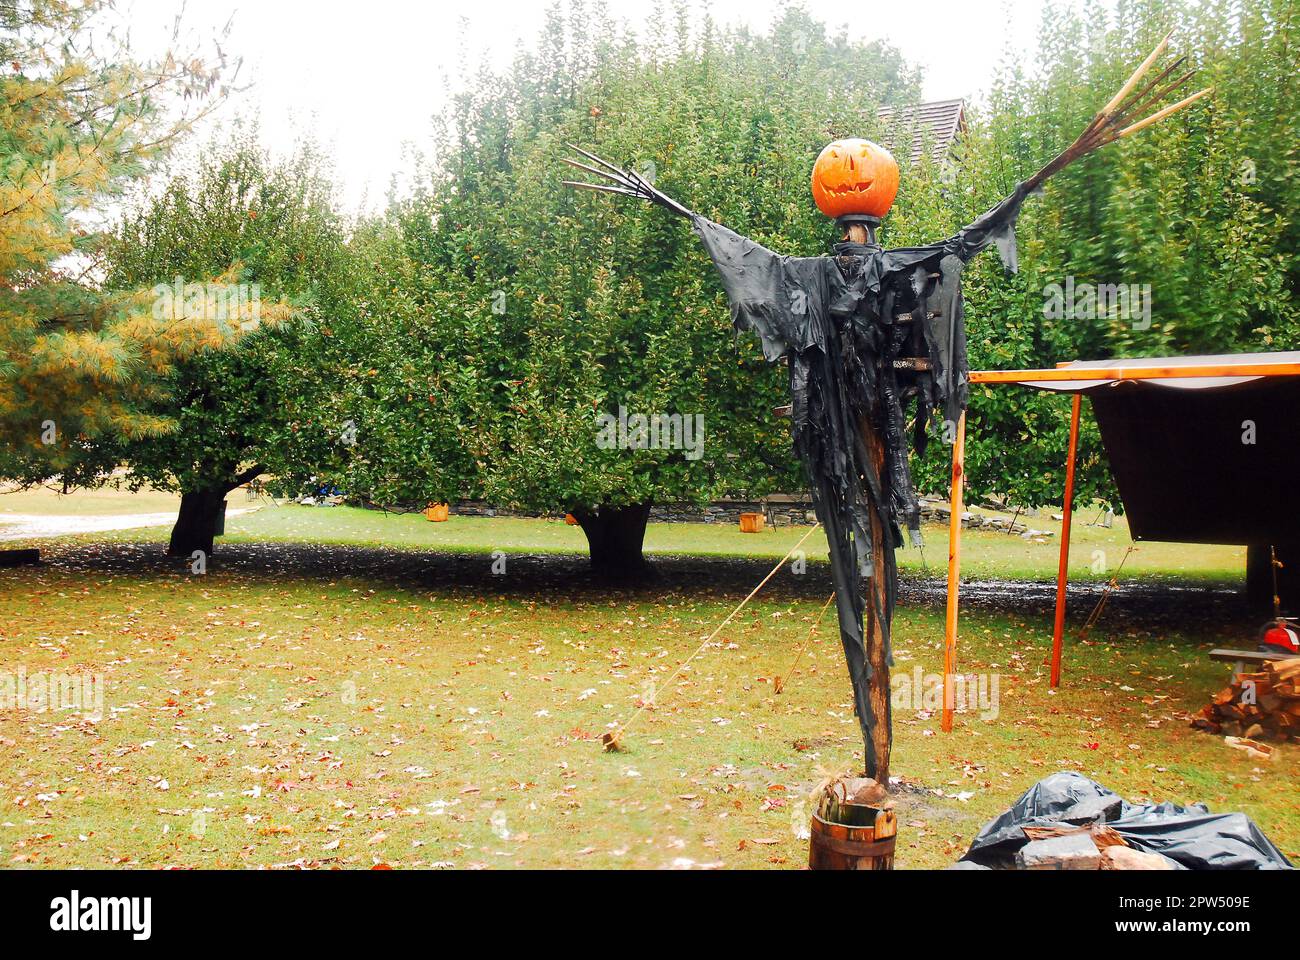 En automne, une tête de citrouille se trouve au-dessus d'une arnaque pour servir de décorations d'Halloween d'automne dans Sleepy Hollow, New York Banque D'Images